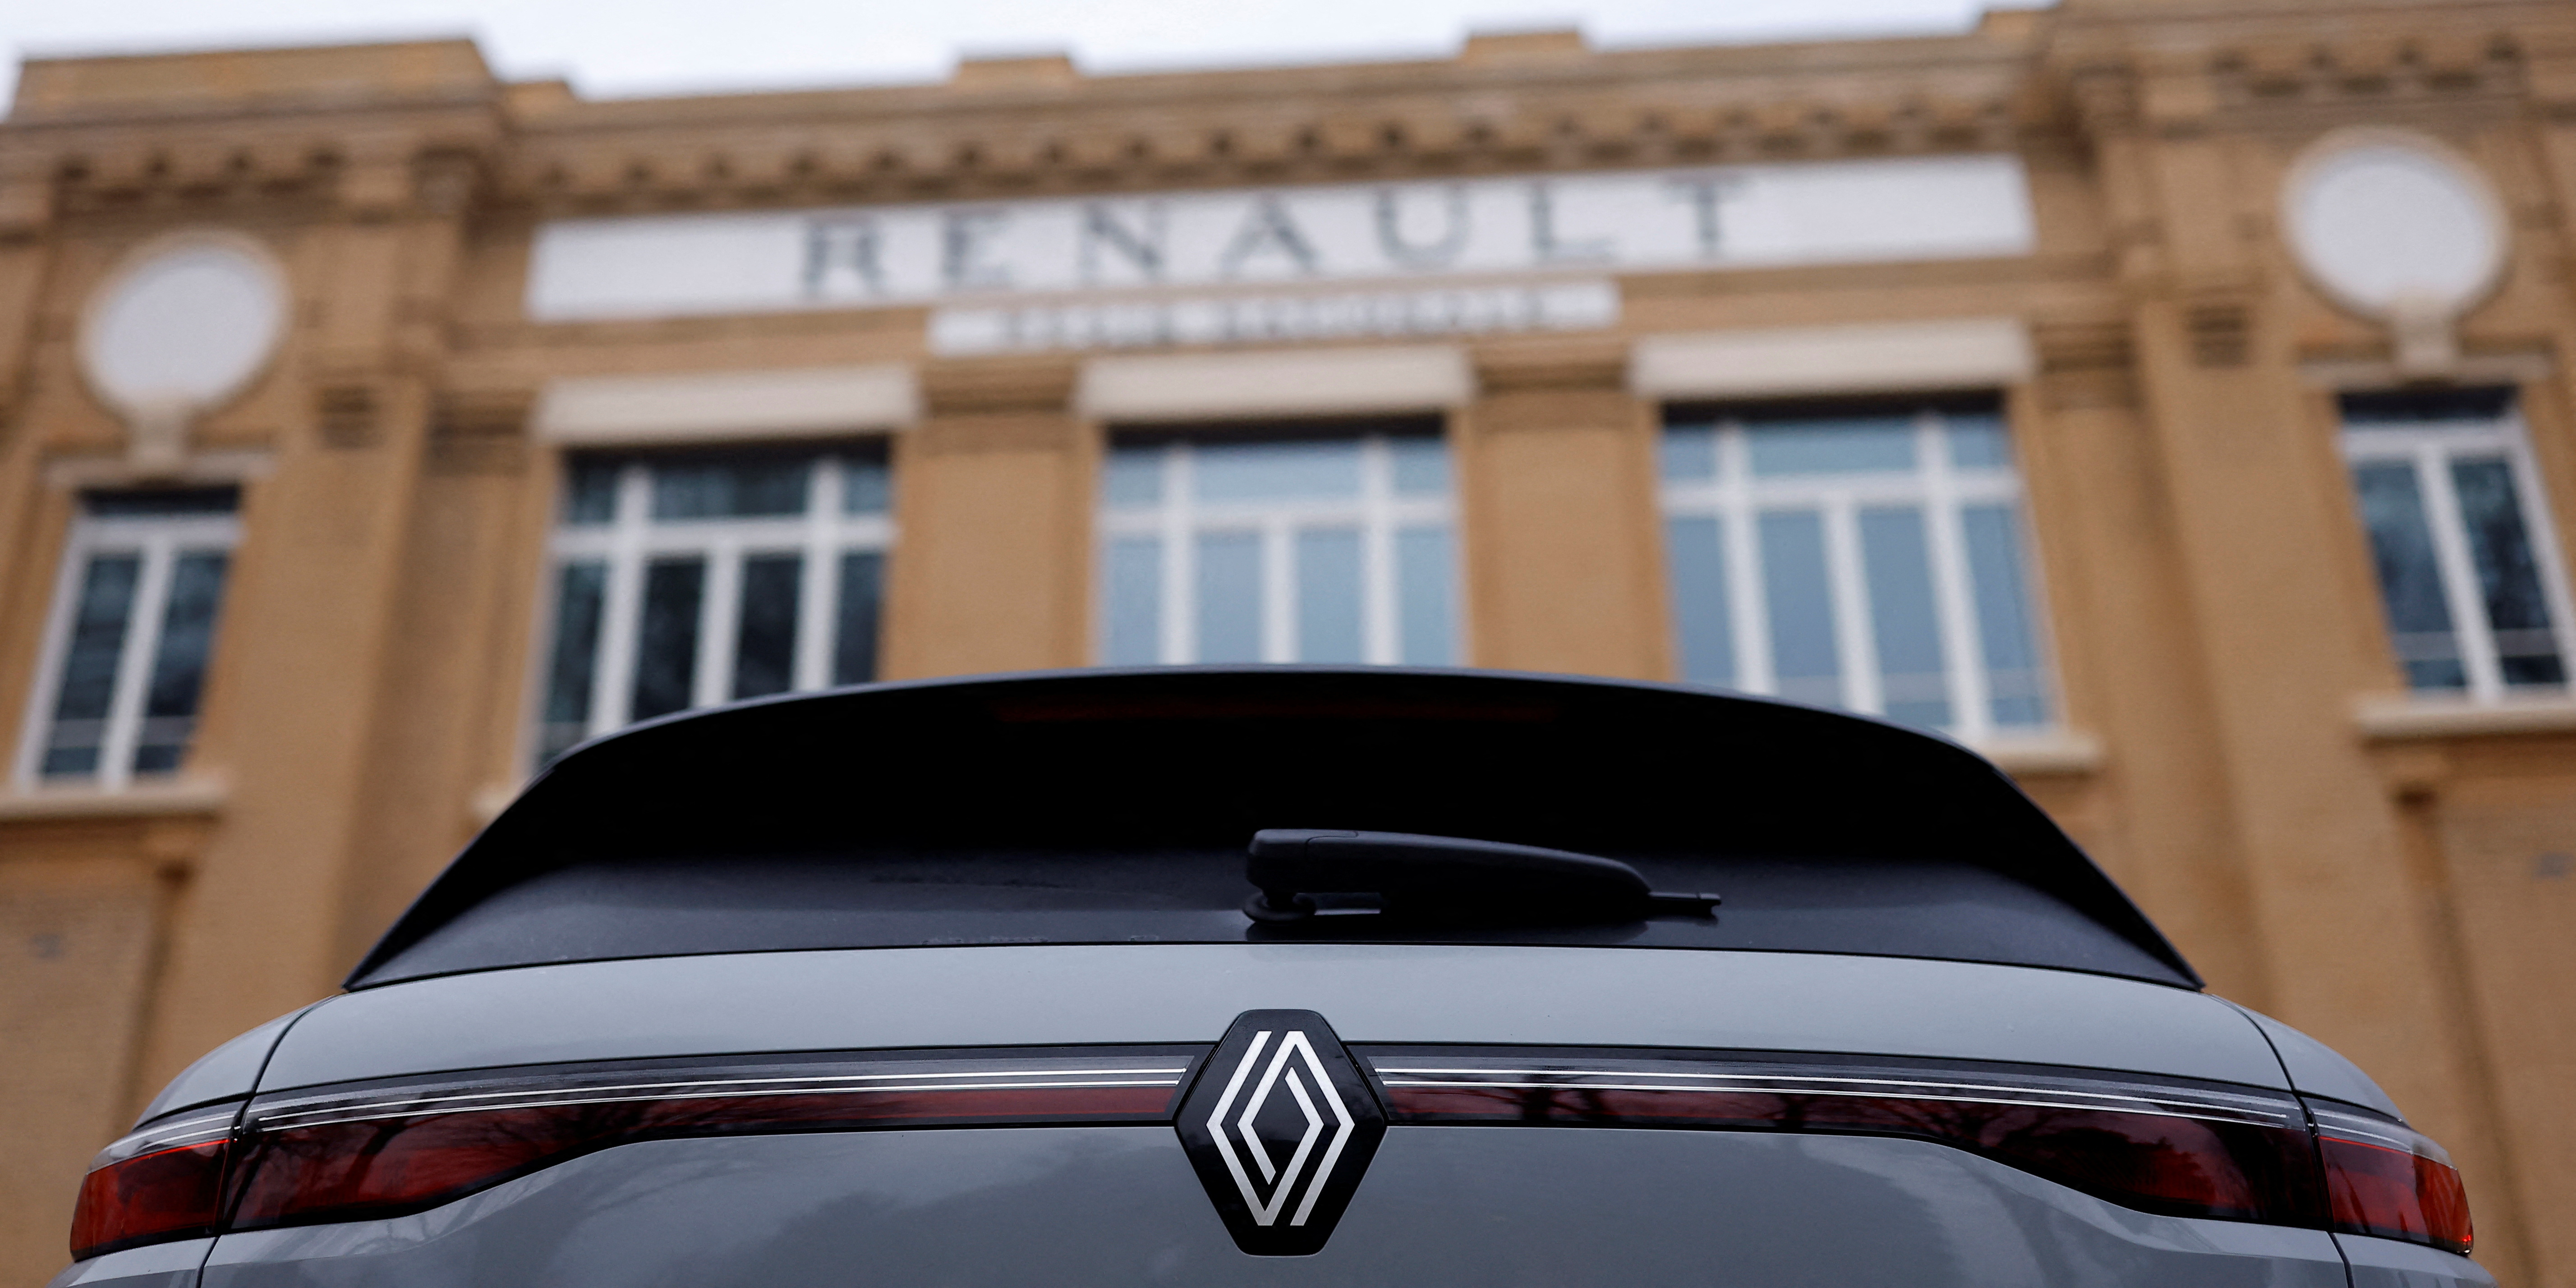 Voiture électrique : Renault promet un modèle à moins de 20.000 euros